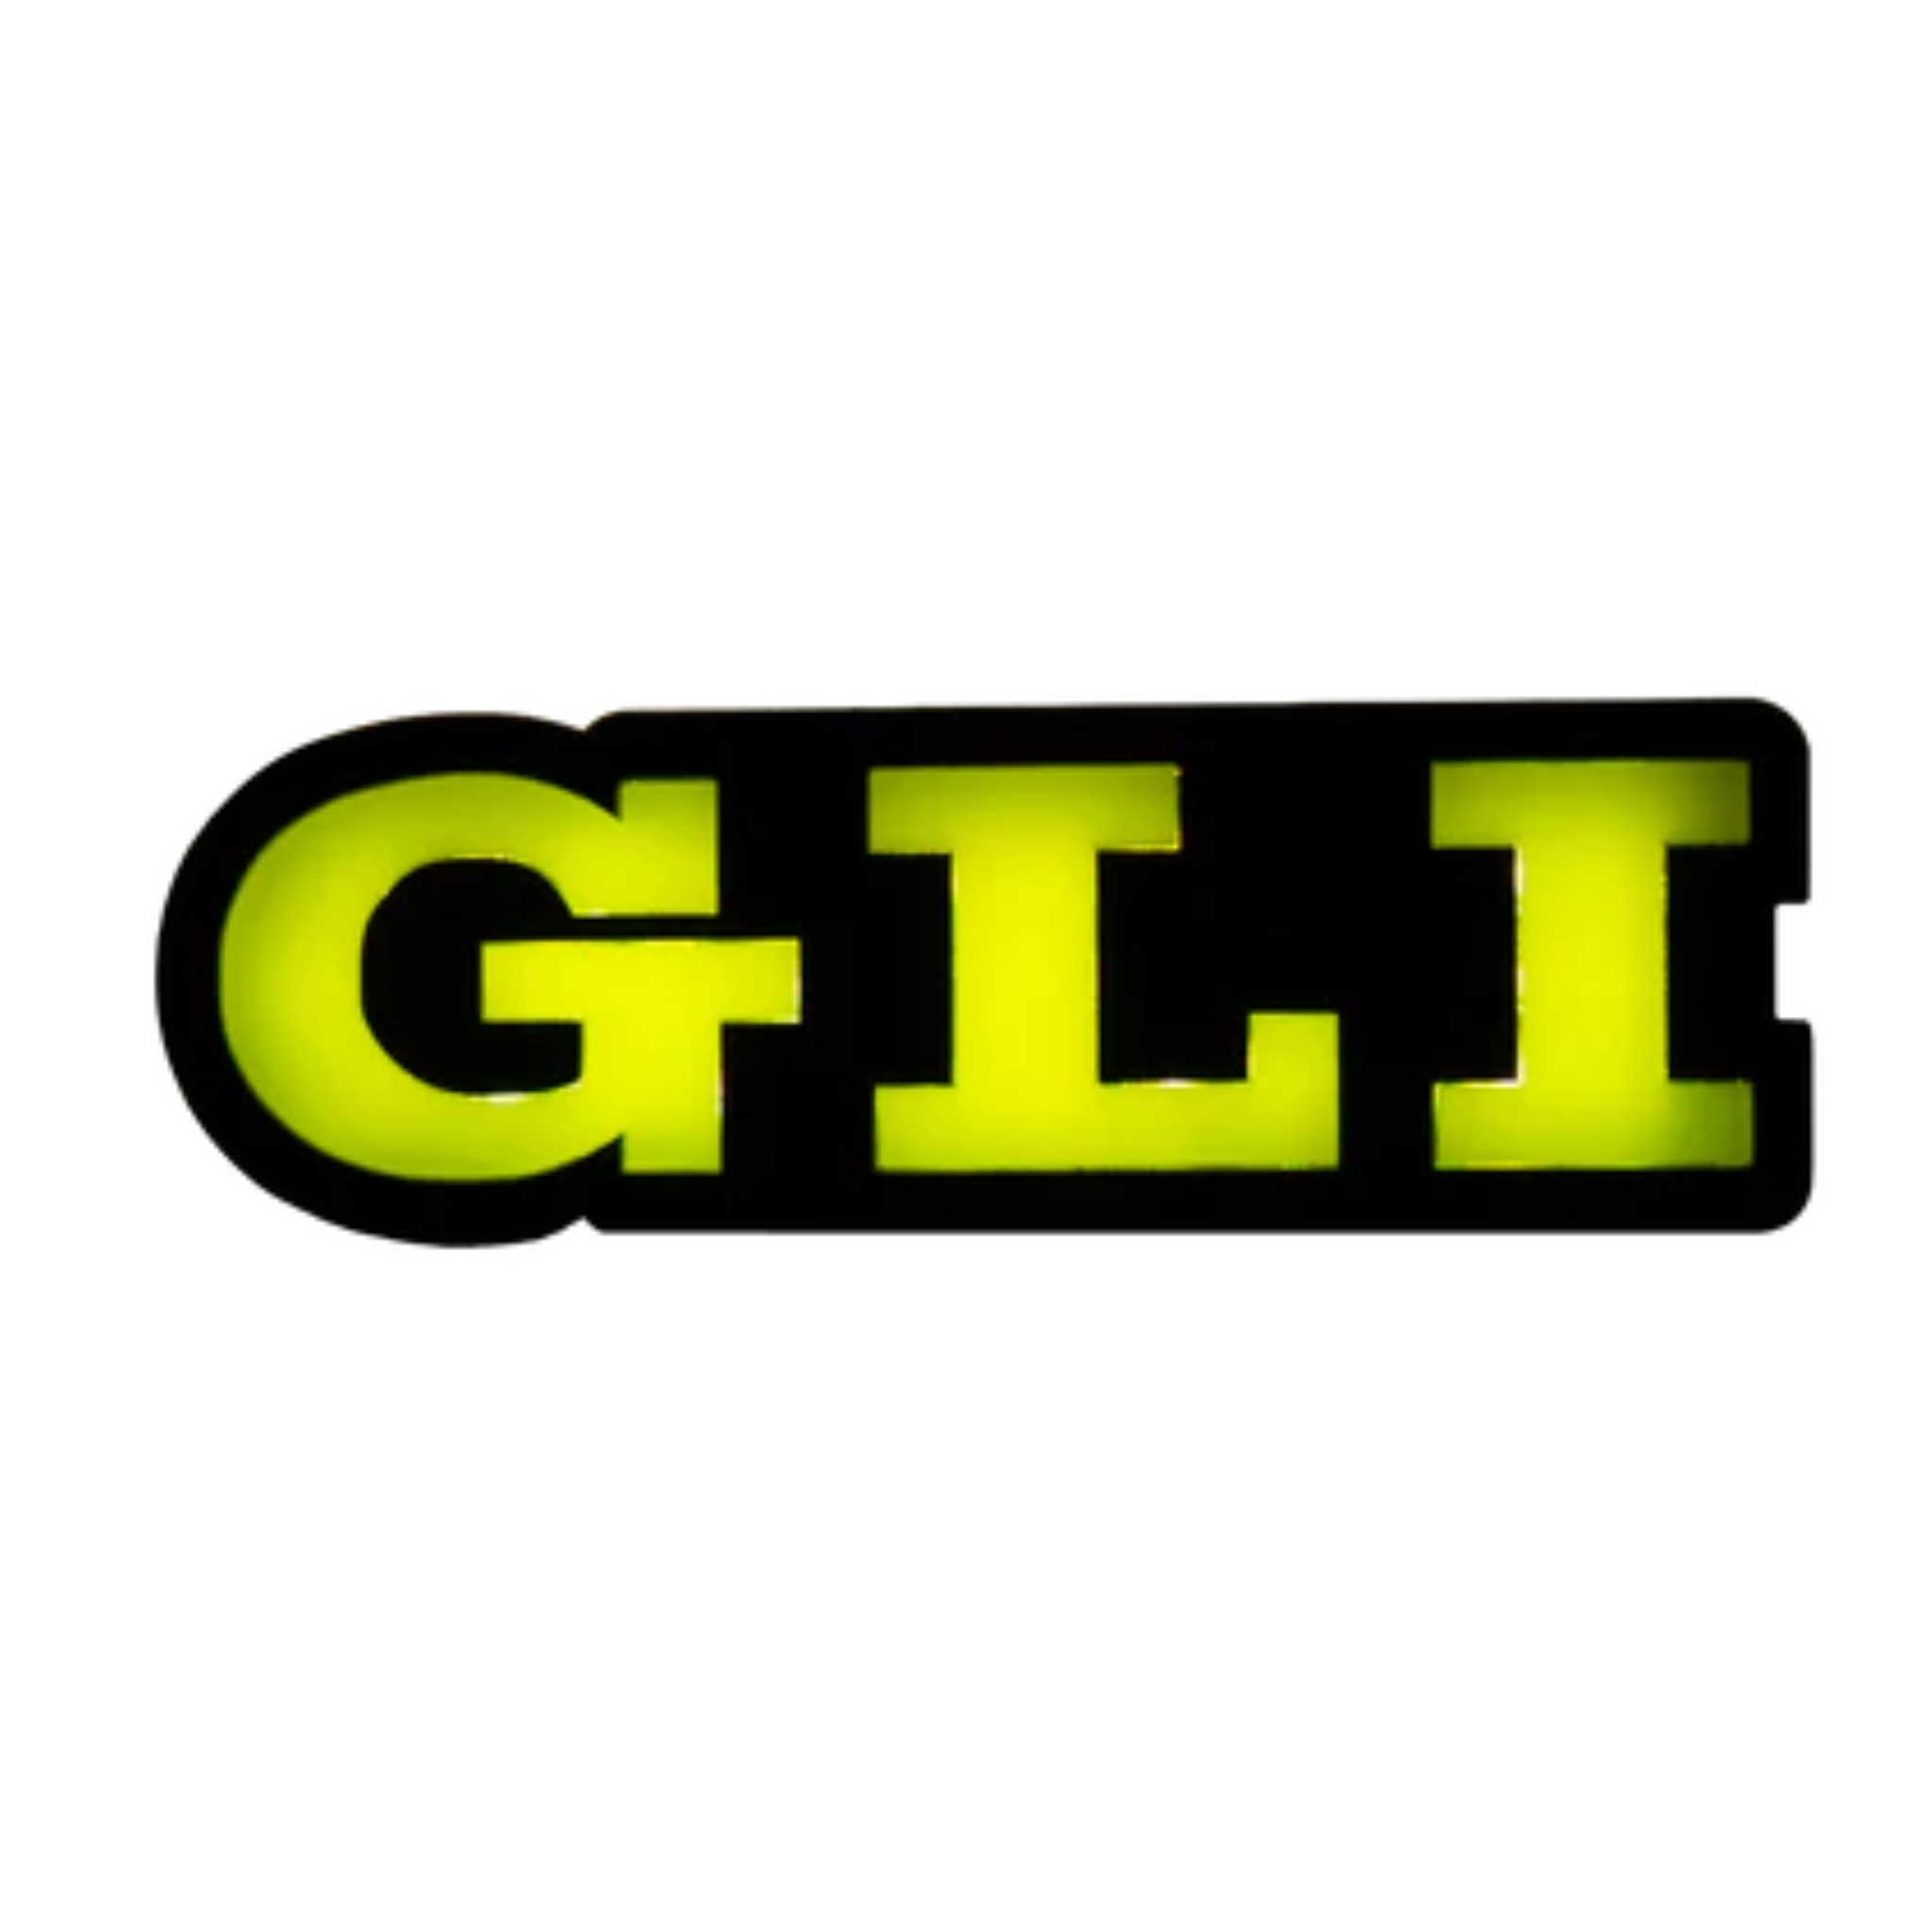 GLI : Illuminated Multicolor LED Badge